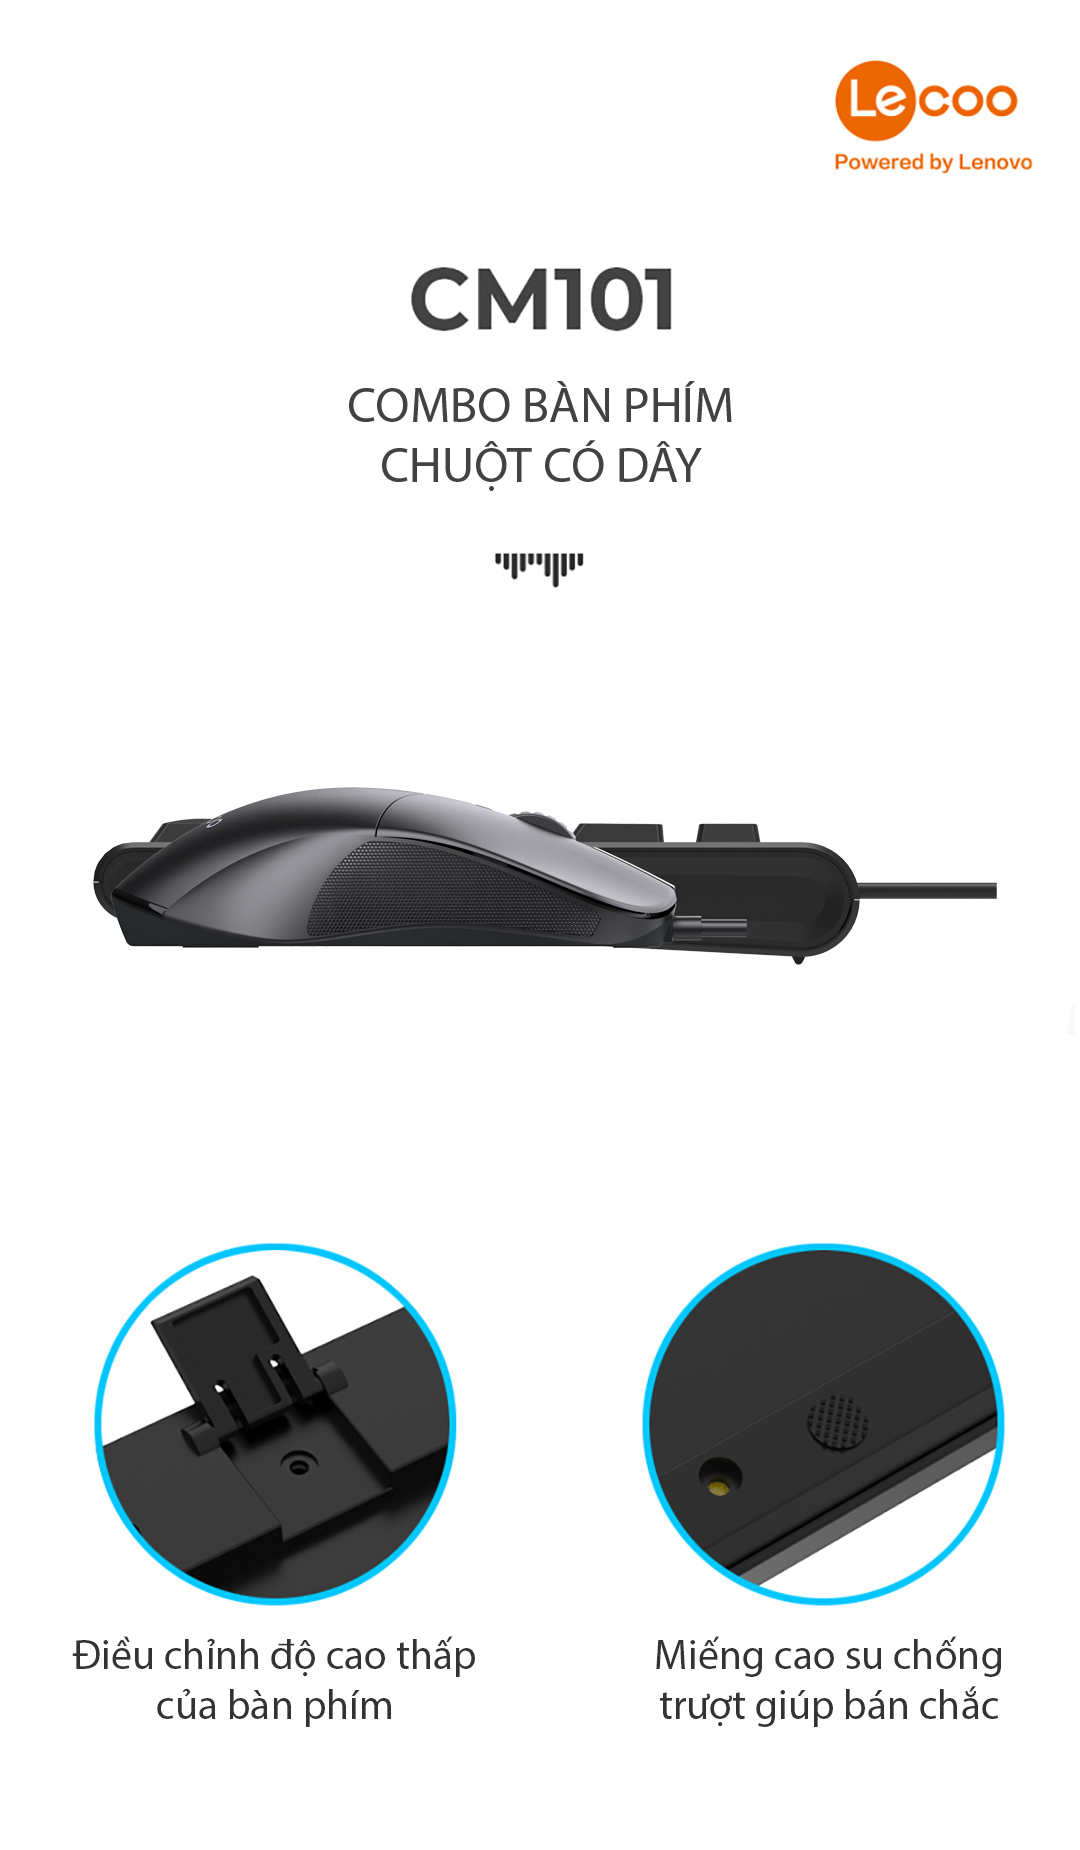 Bộ phím chuột có dây Lecoo CM101 màu đen